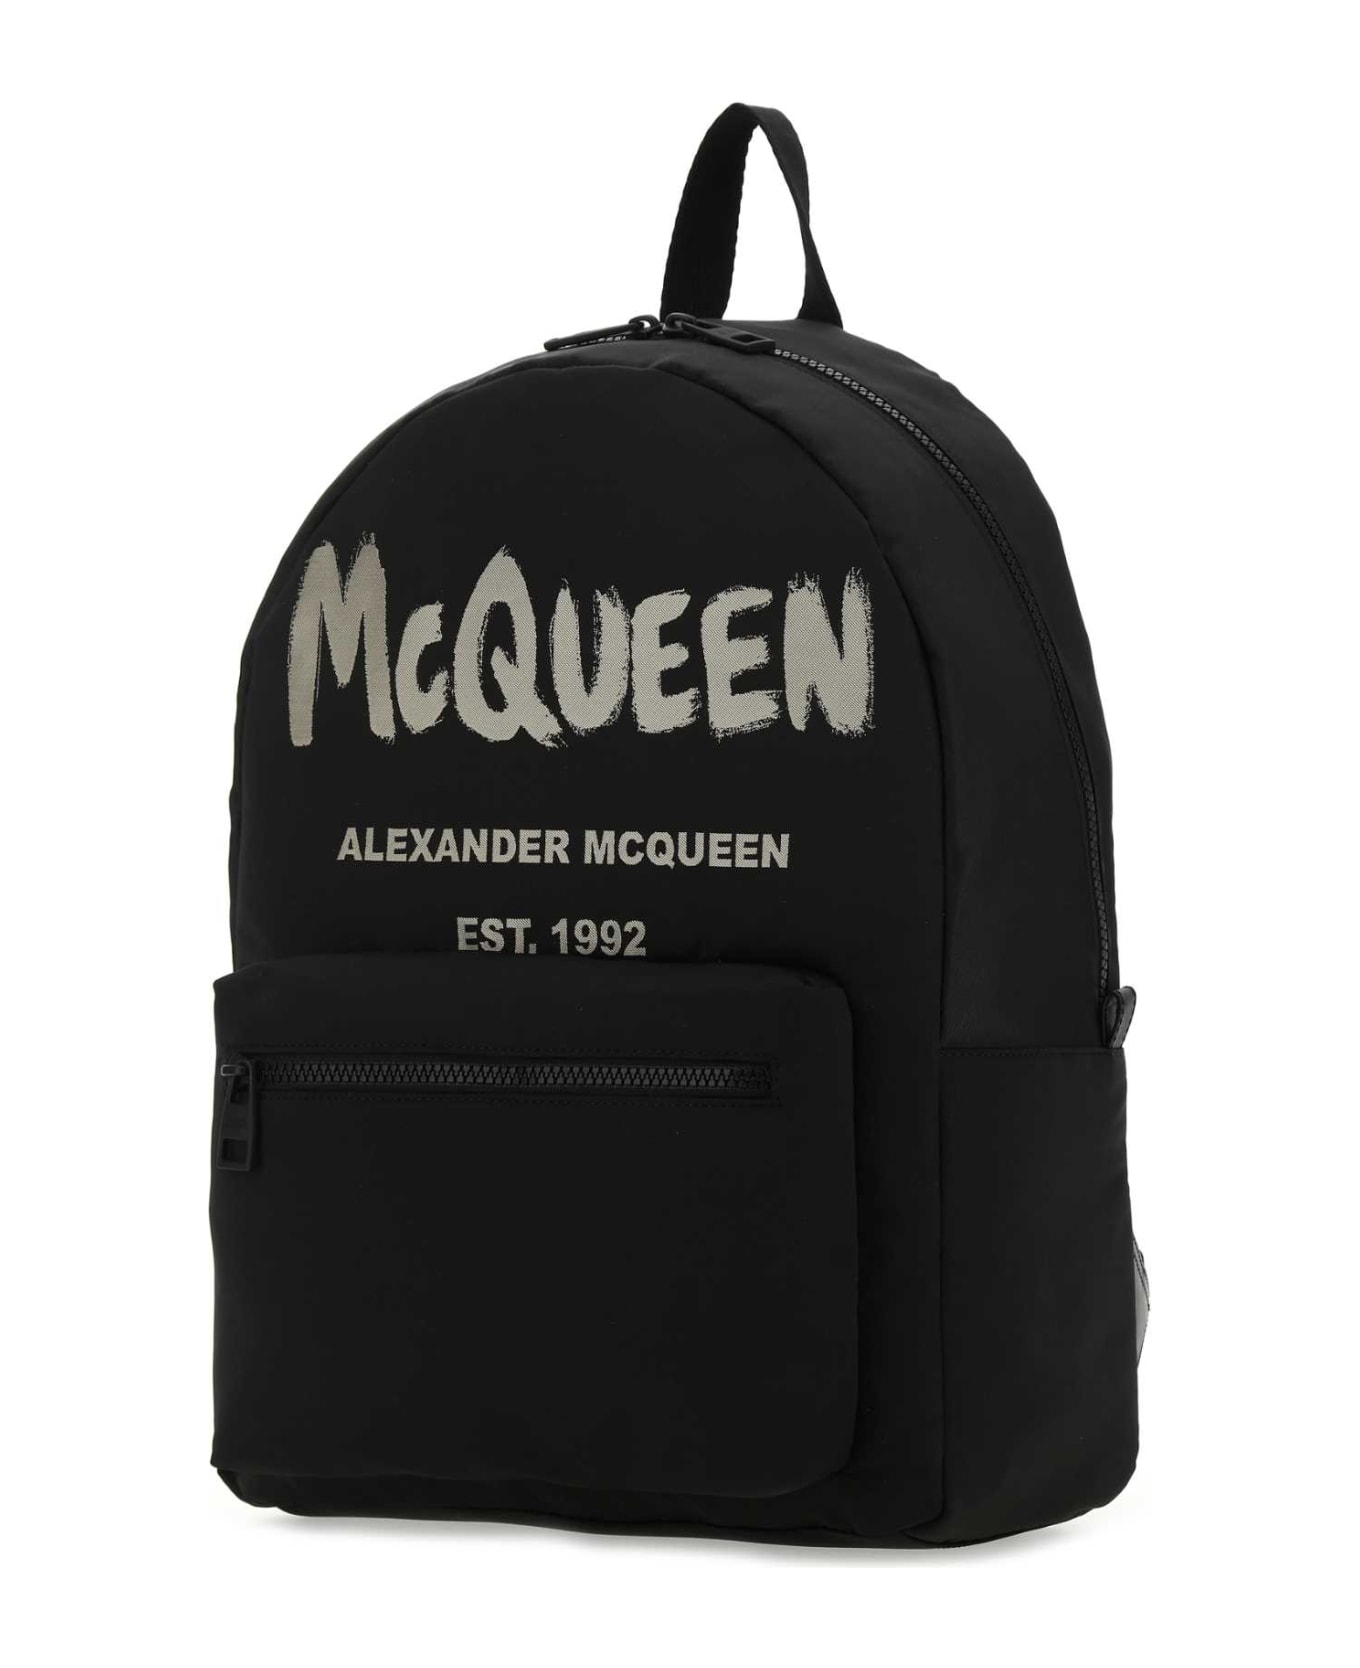 Alexander McQueen Black Canvas Metropolitan Backpack - 1073